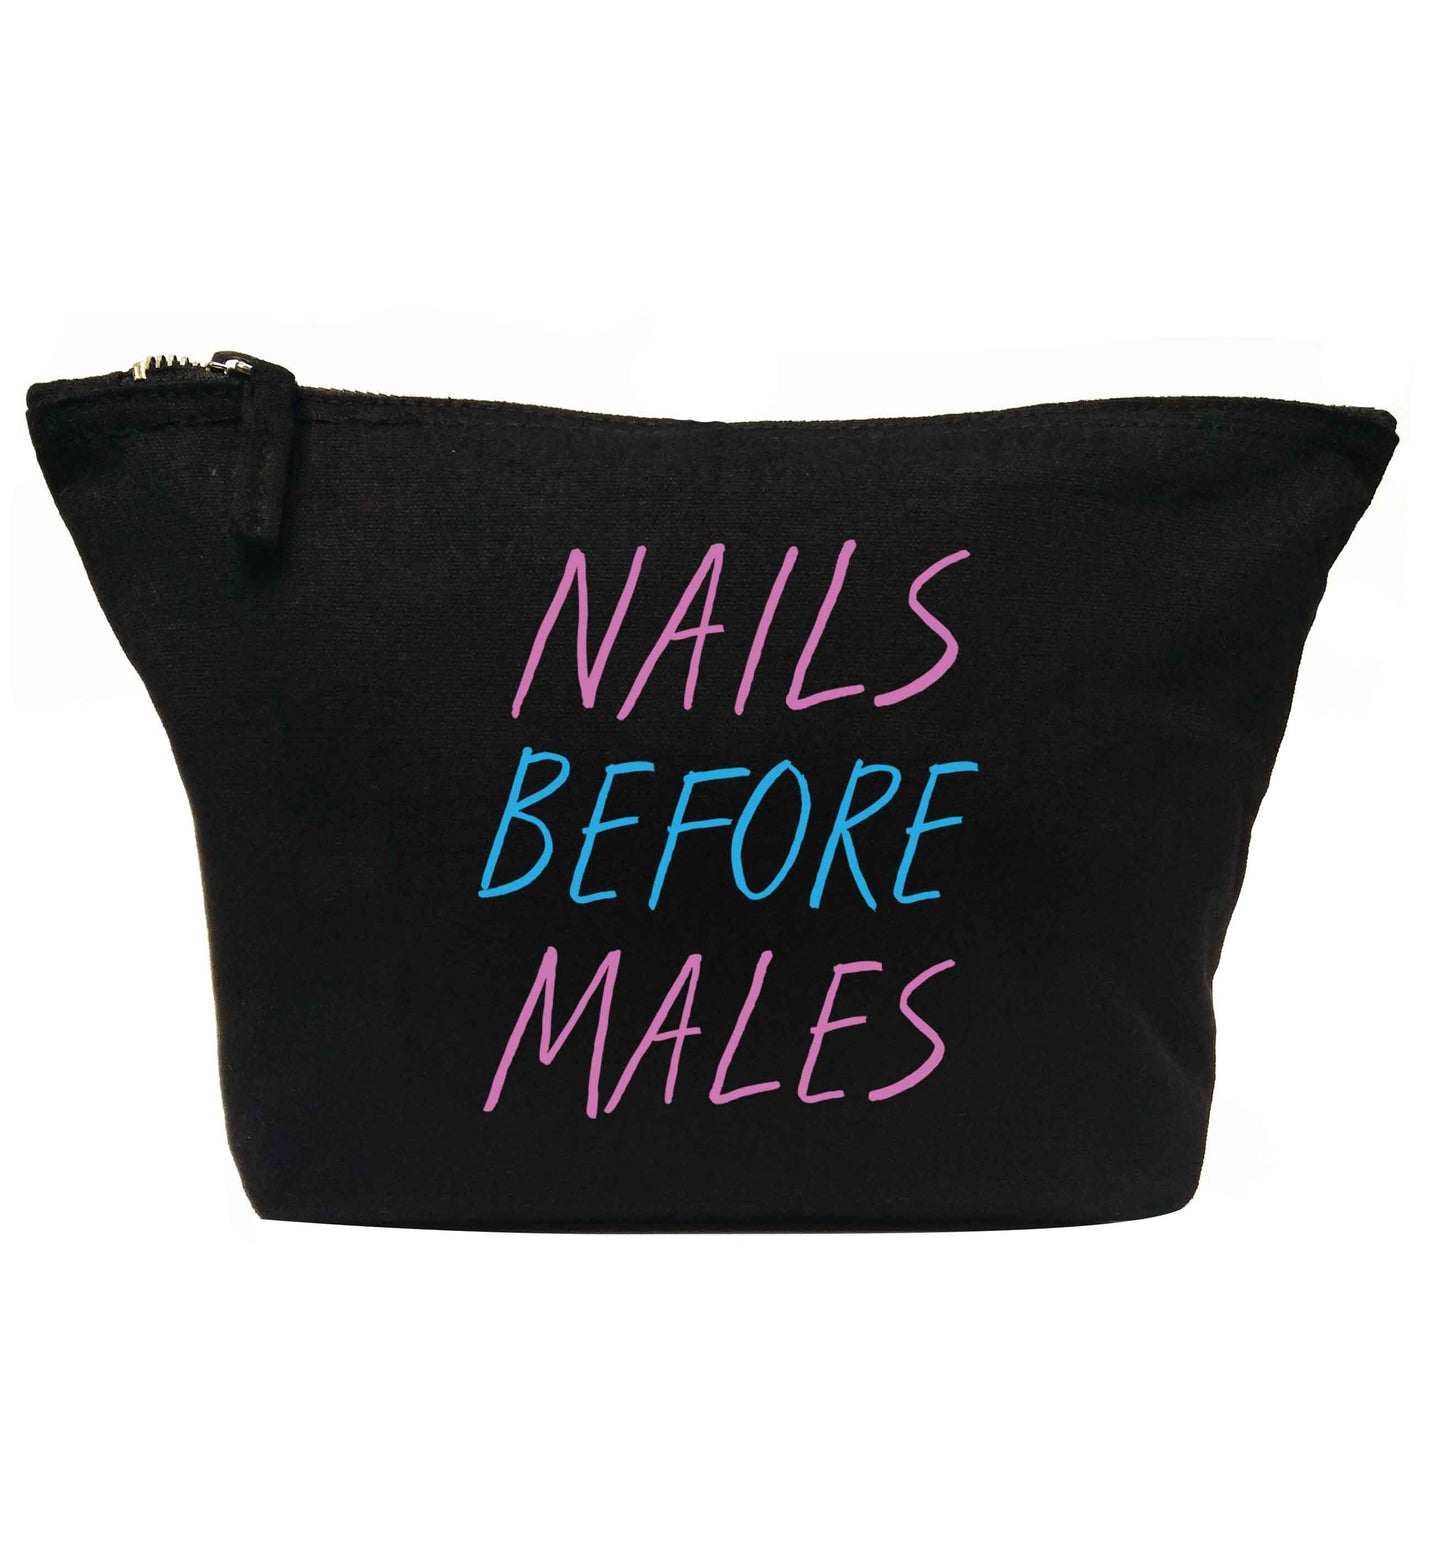 Nails before males | Makeup / wash bag